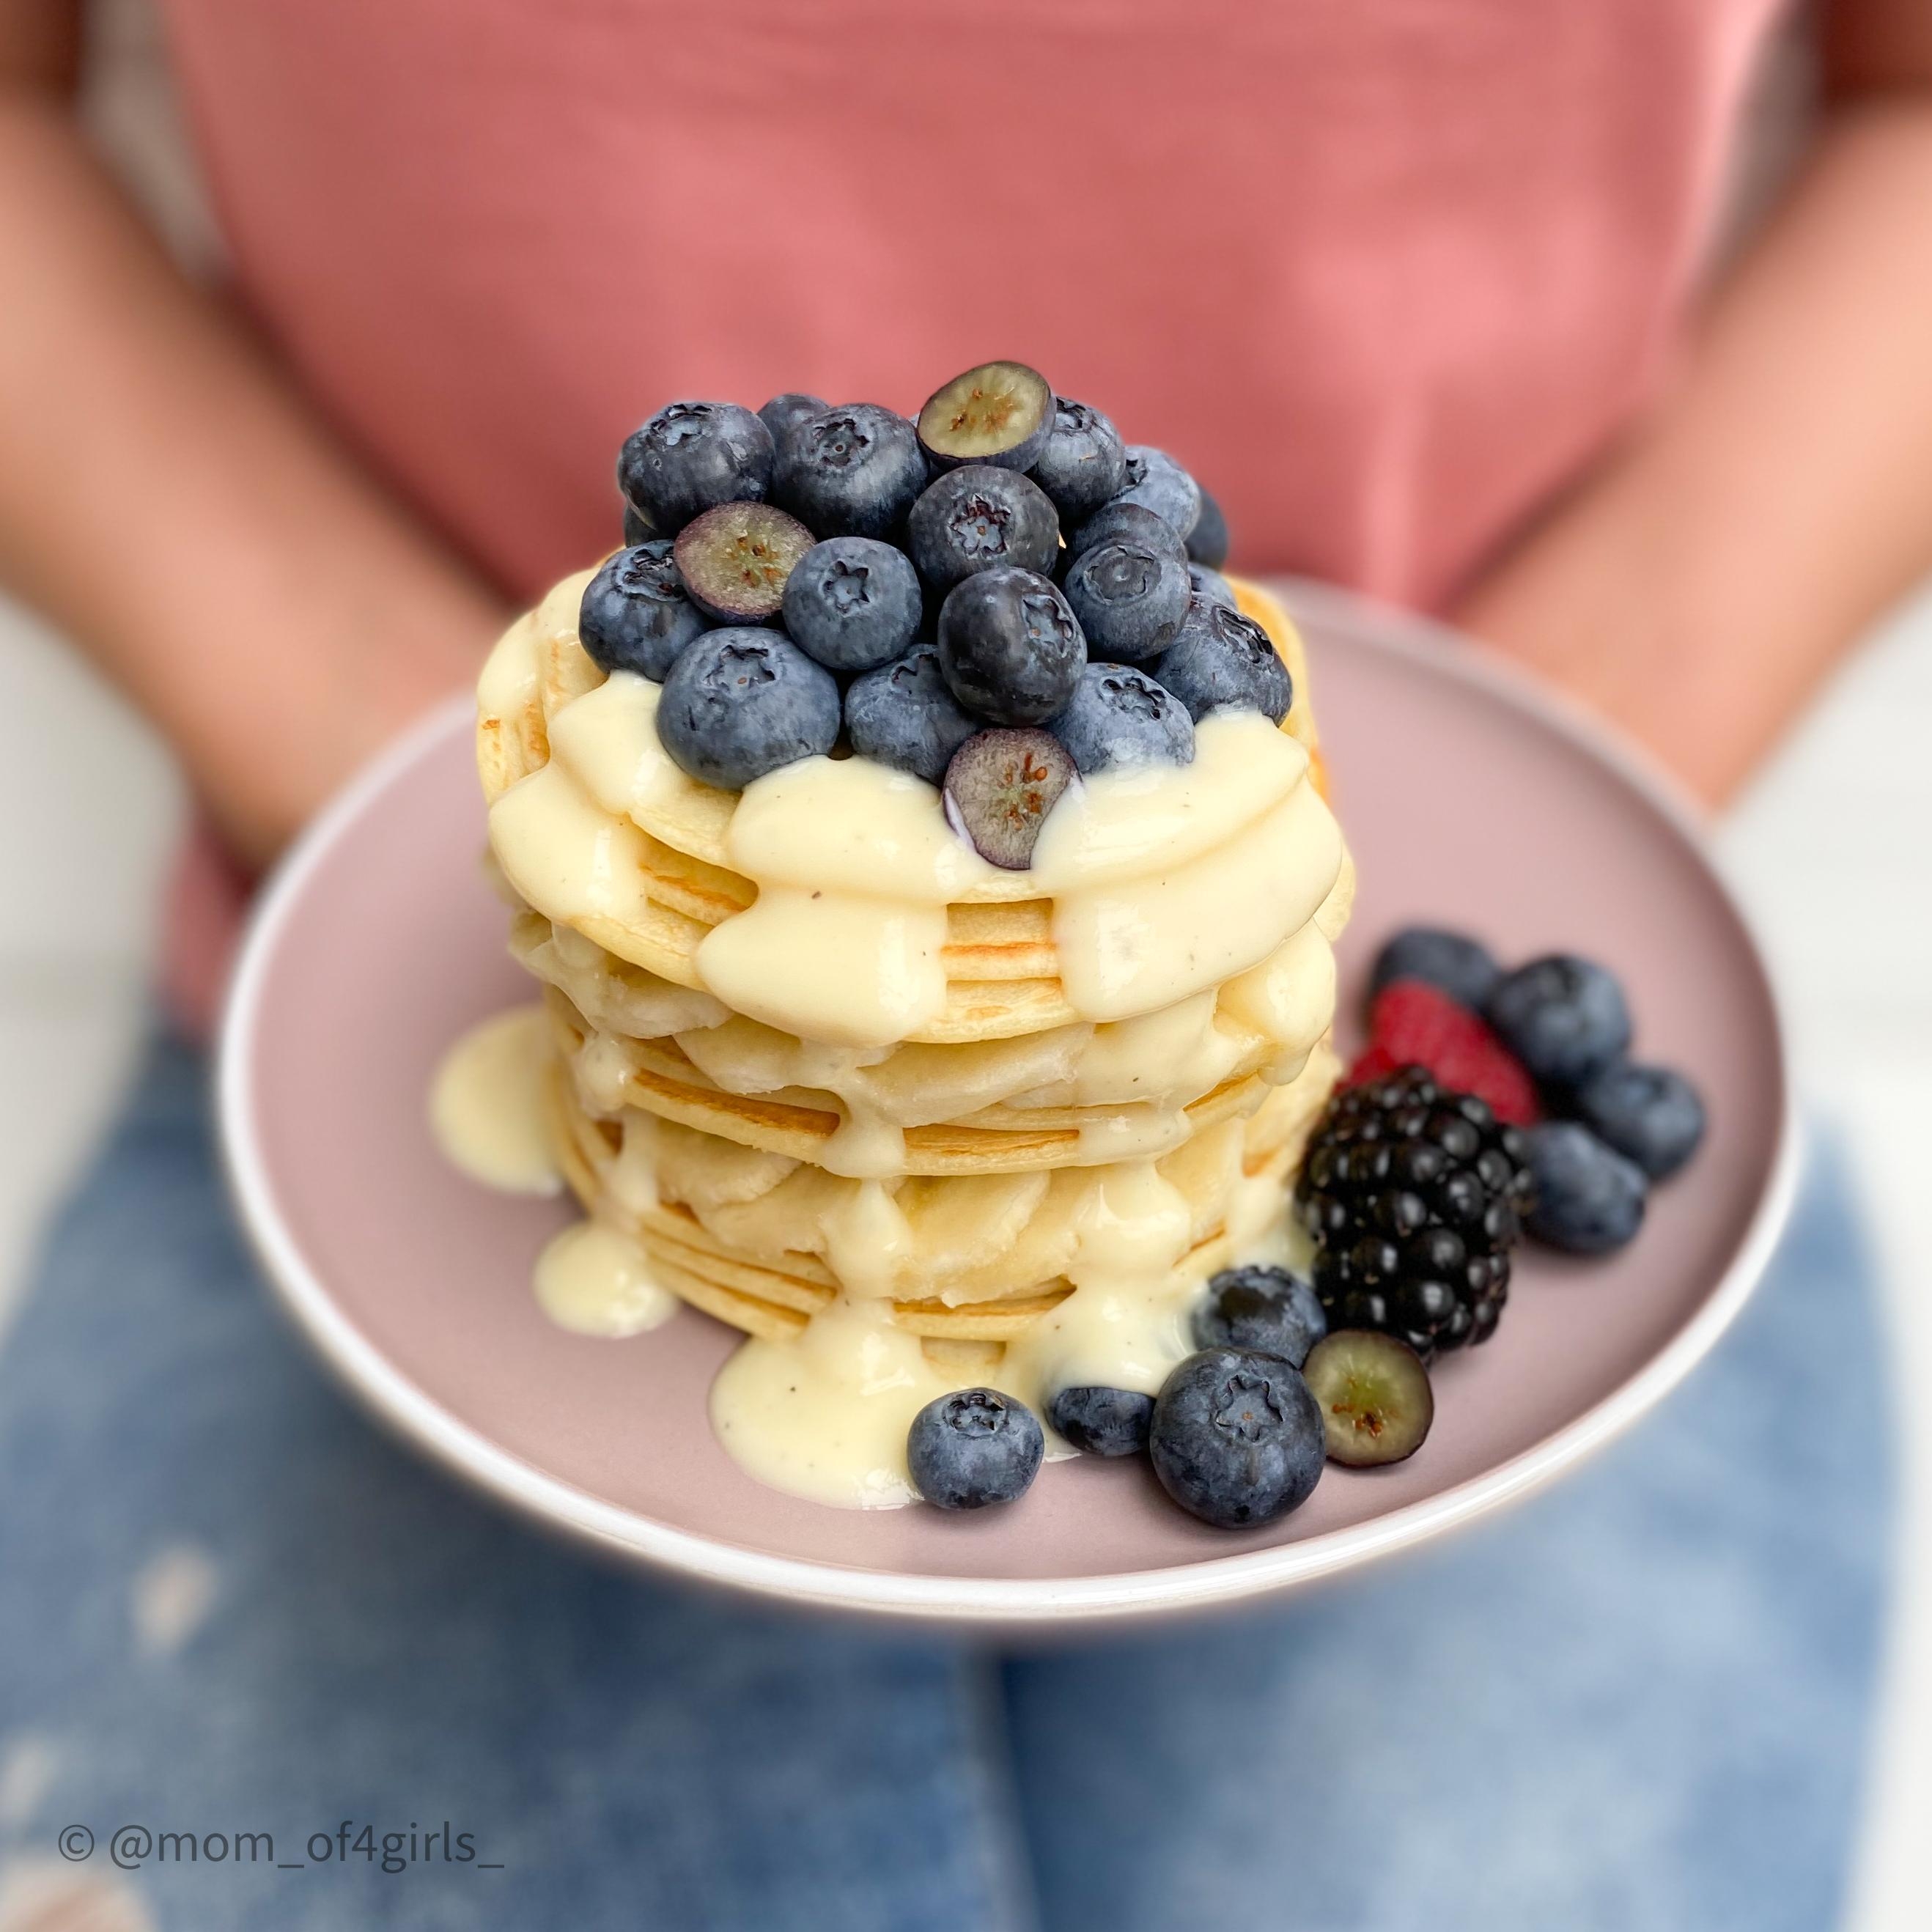 #frühstück #breakfast #yummy #lecker #pancakes #pfannkuchen #beerig #healthybreakfast #vegan